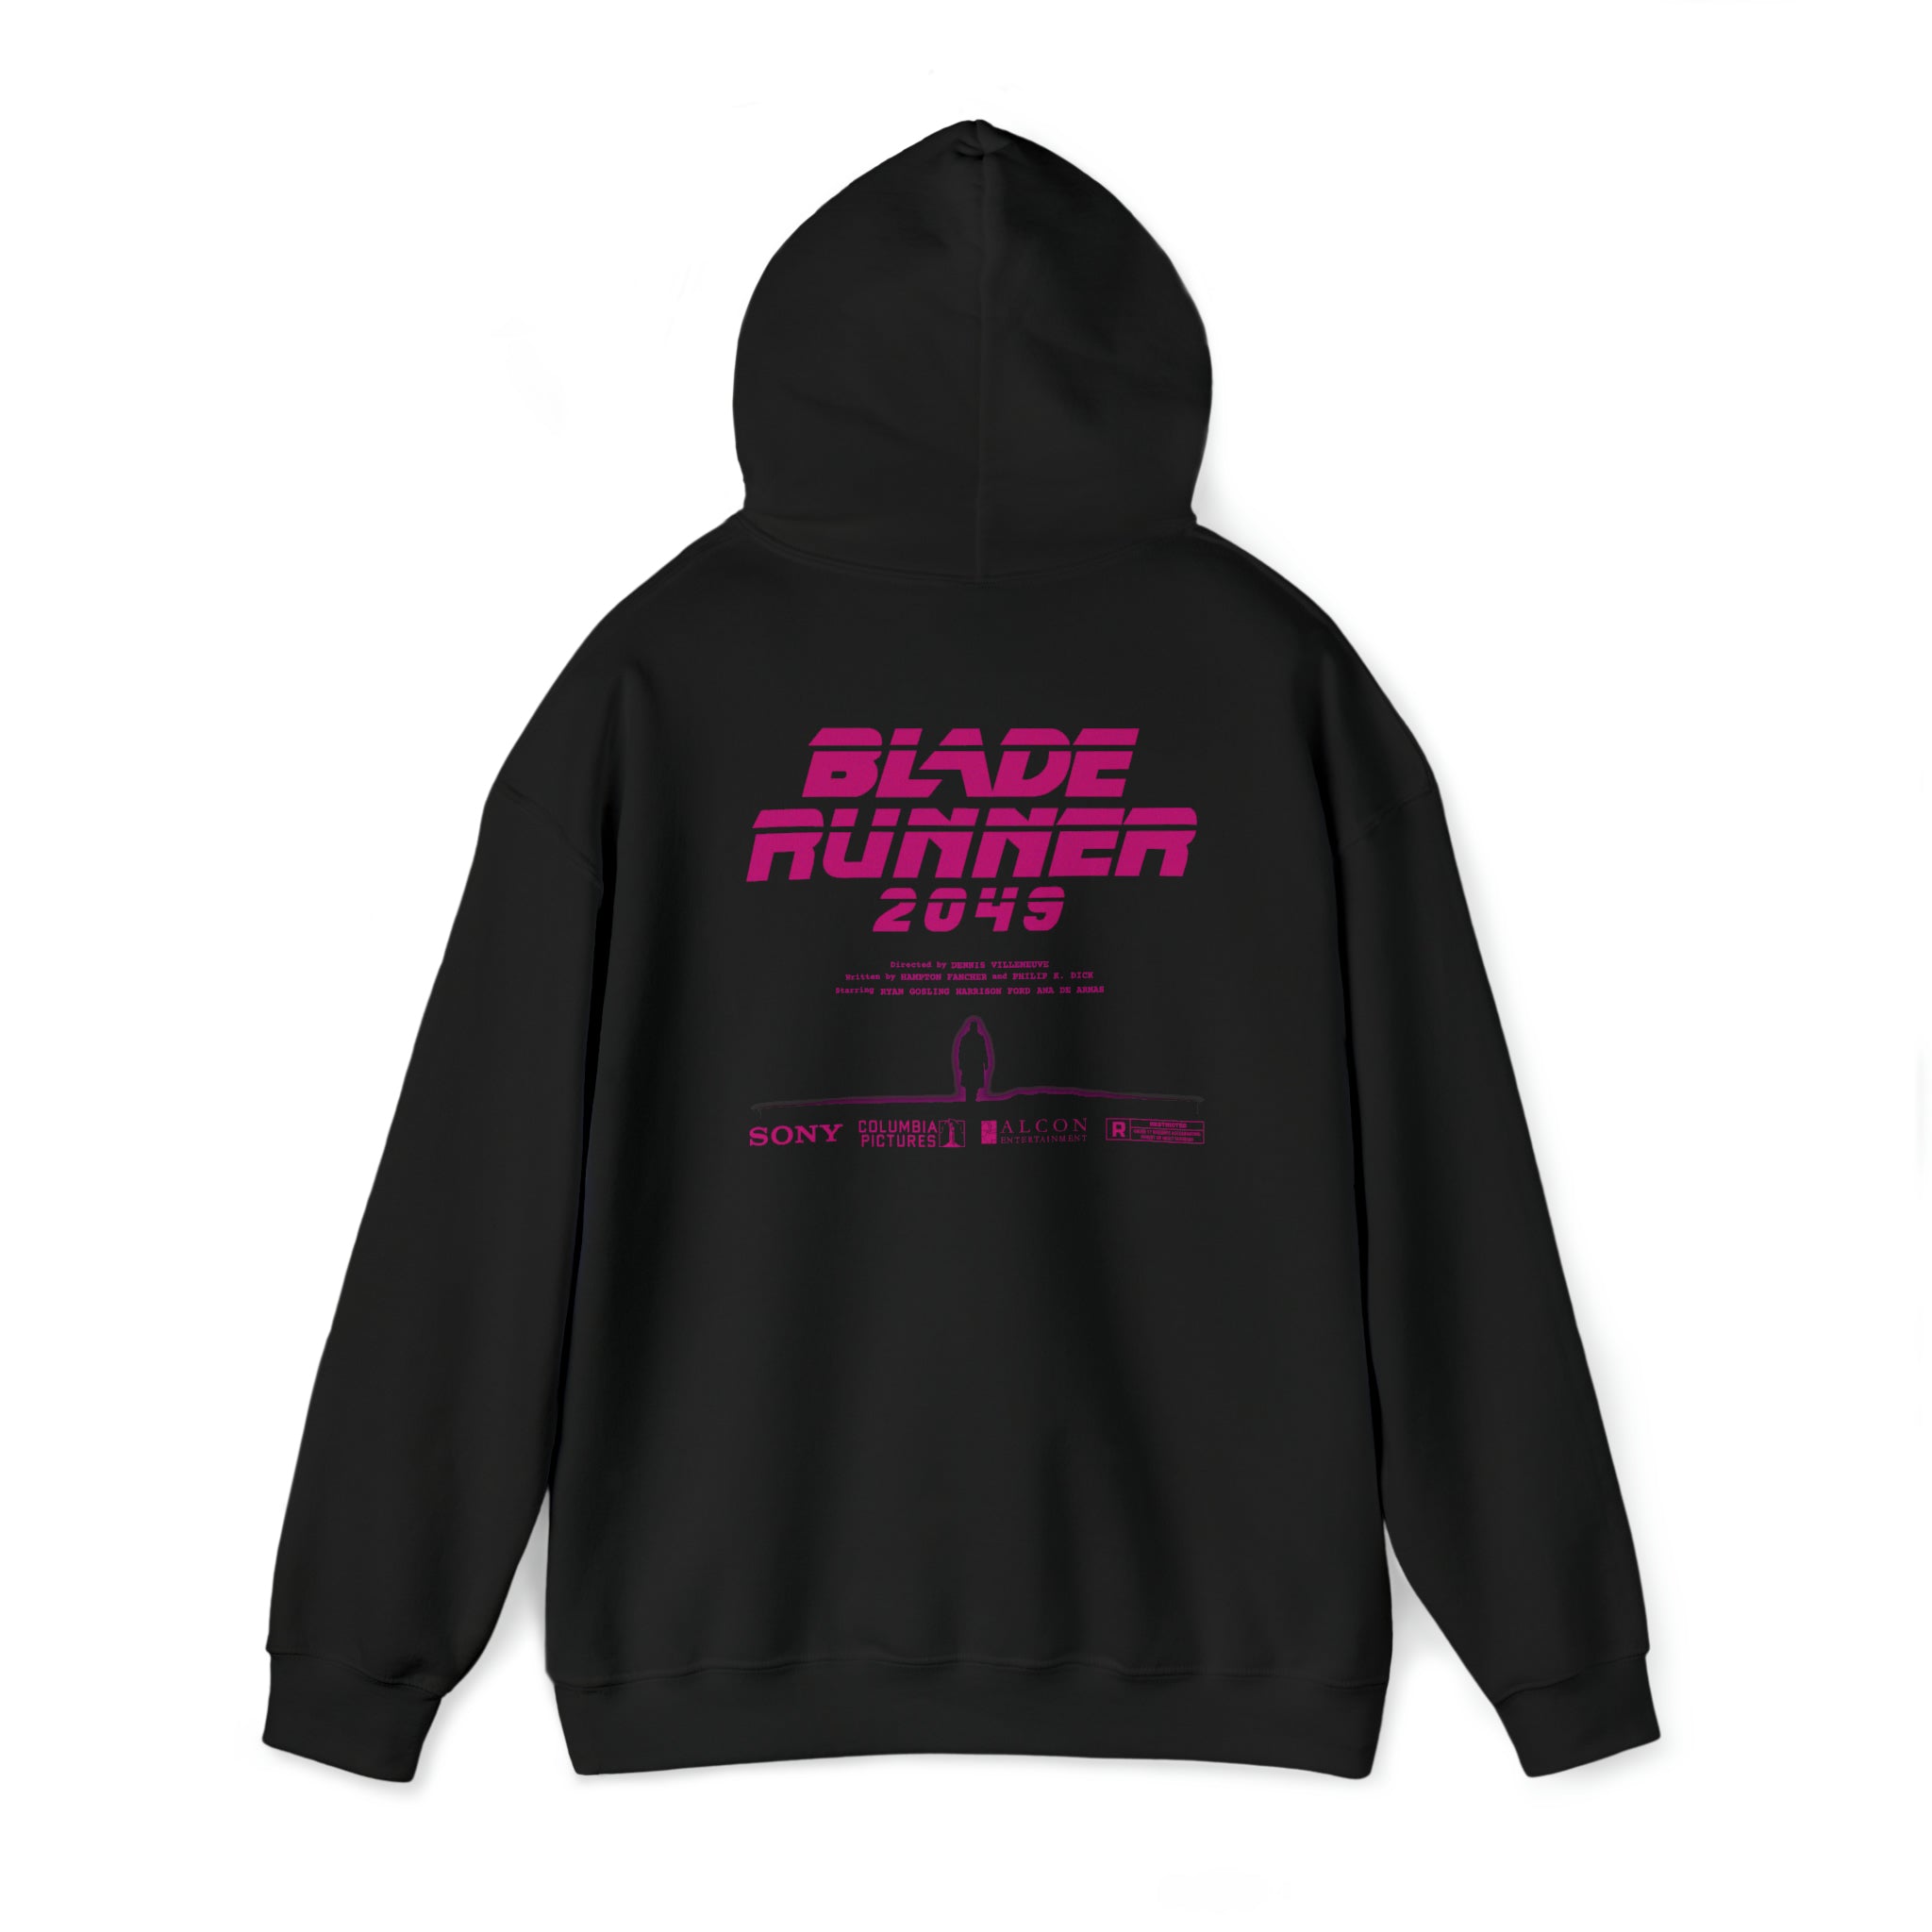 Blade Runner 2049 Hoodie - Unisex Heavy Blend™